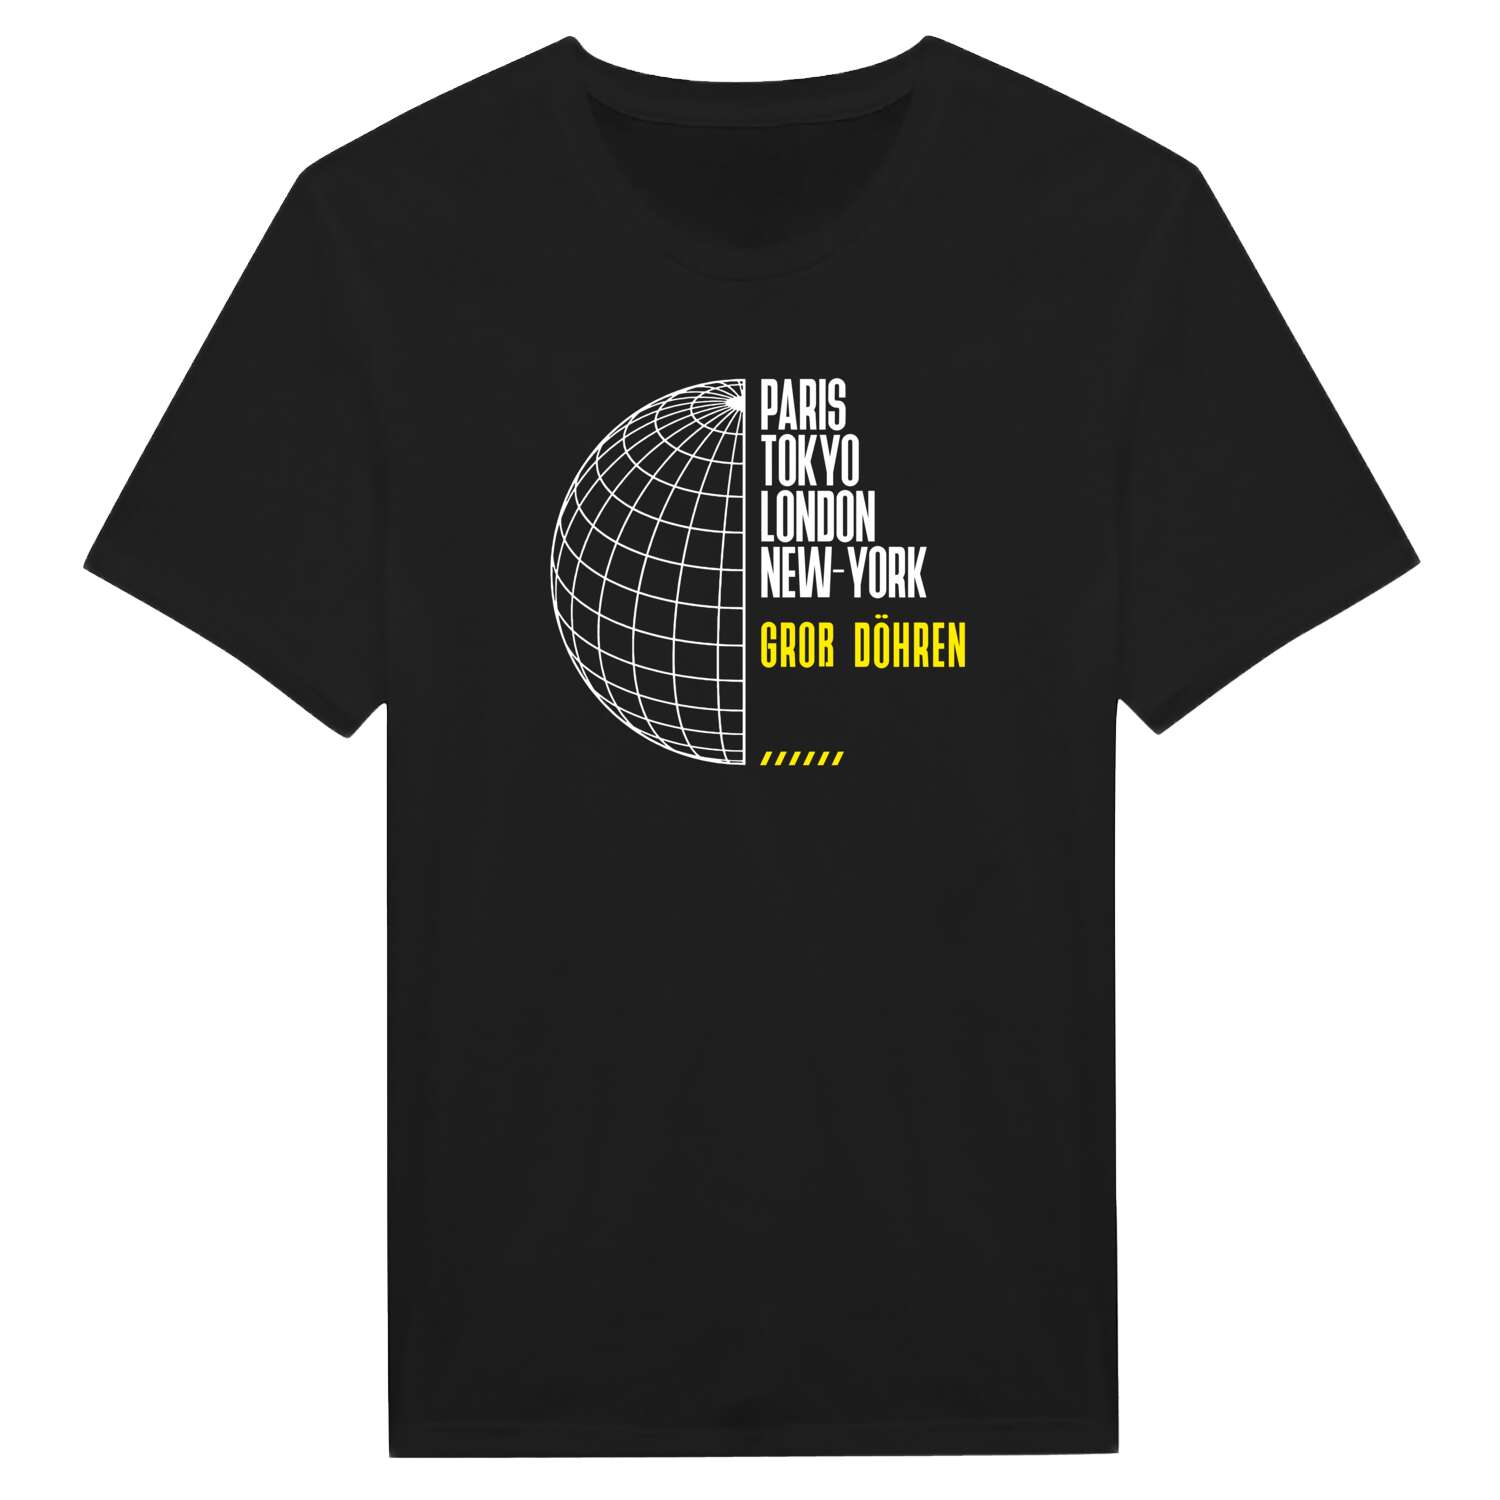 Groß Döhren T-Shirt »Paris Tokyo London«